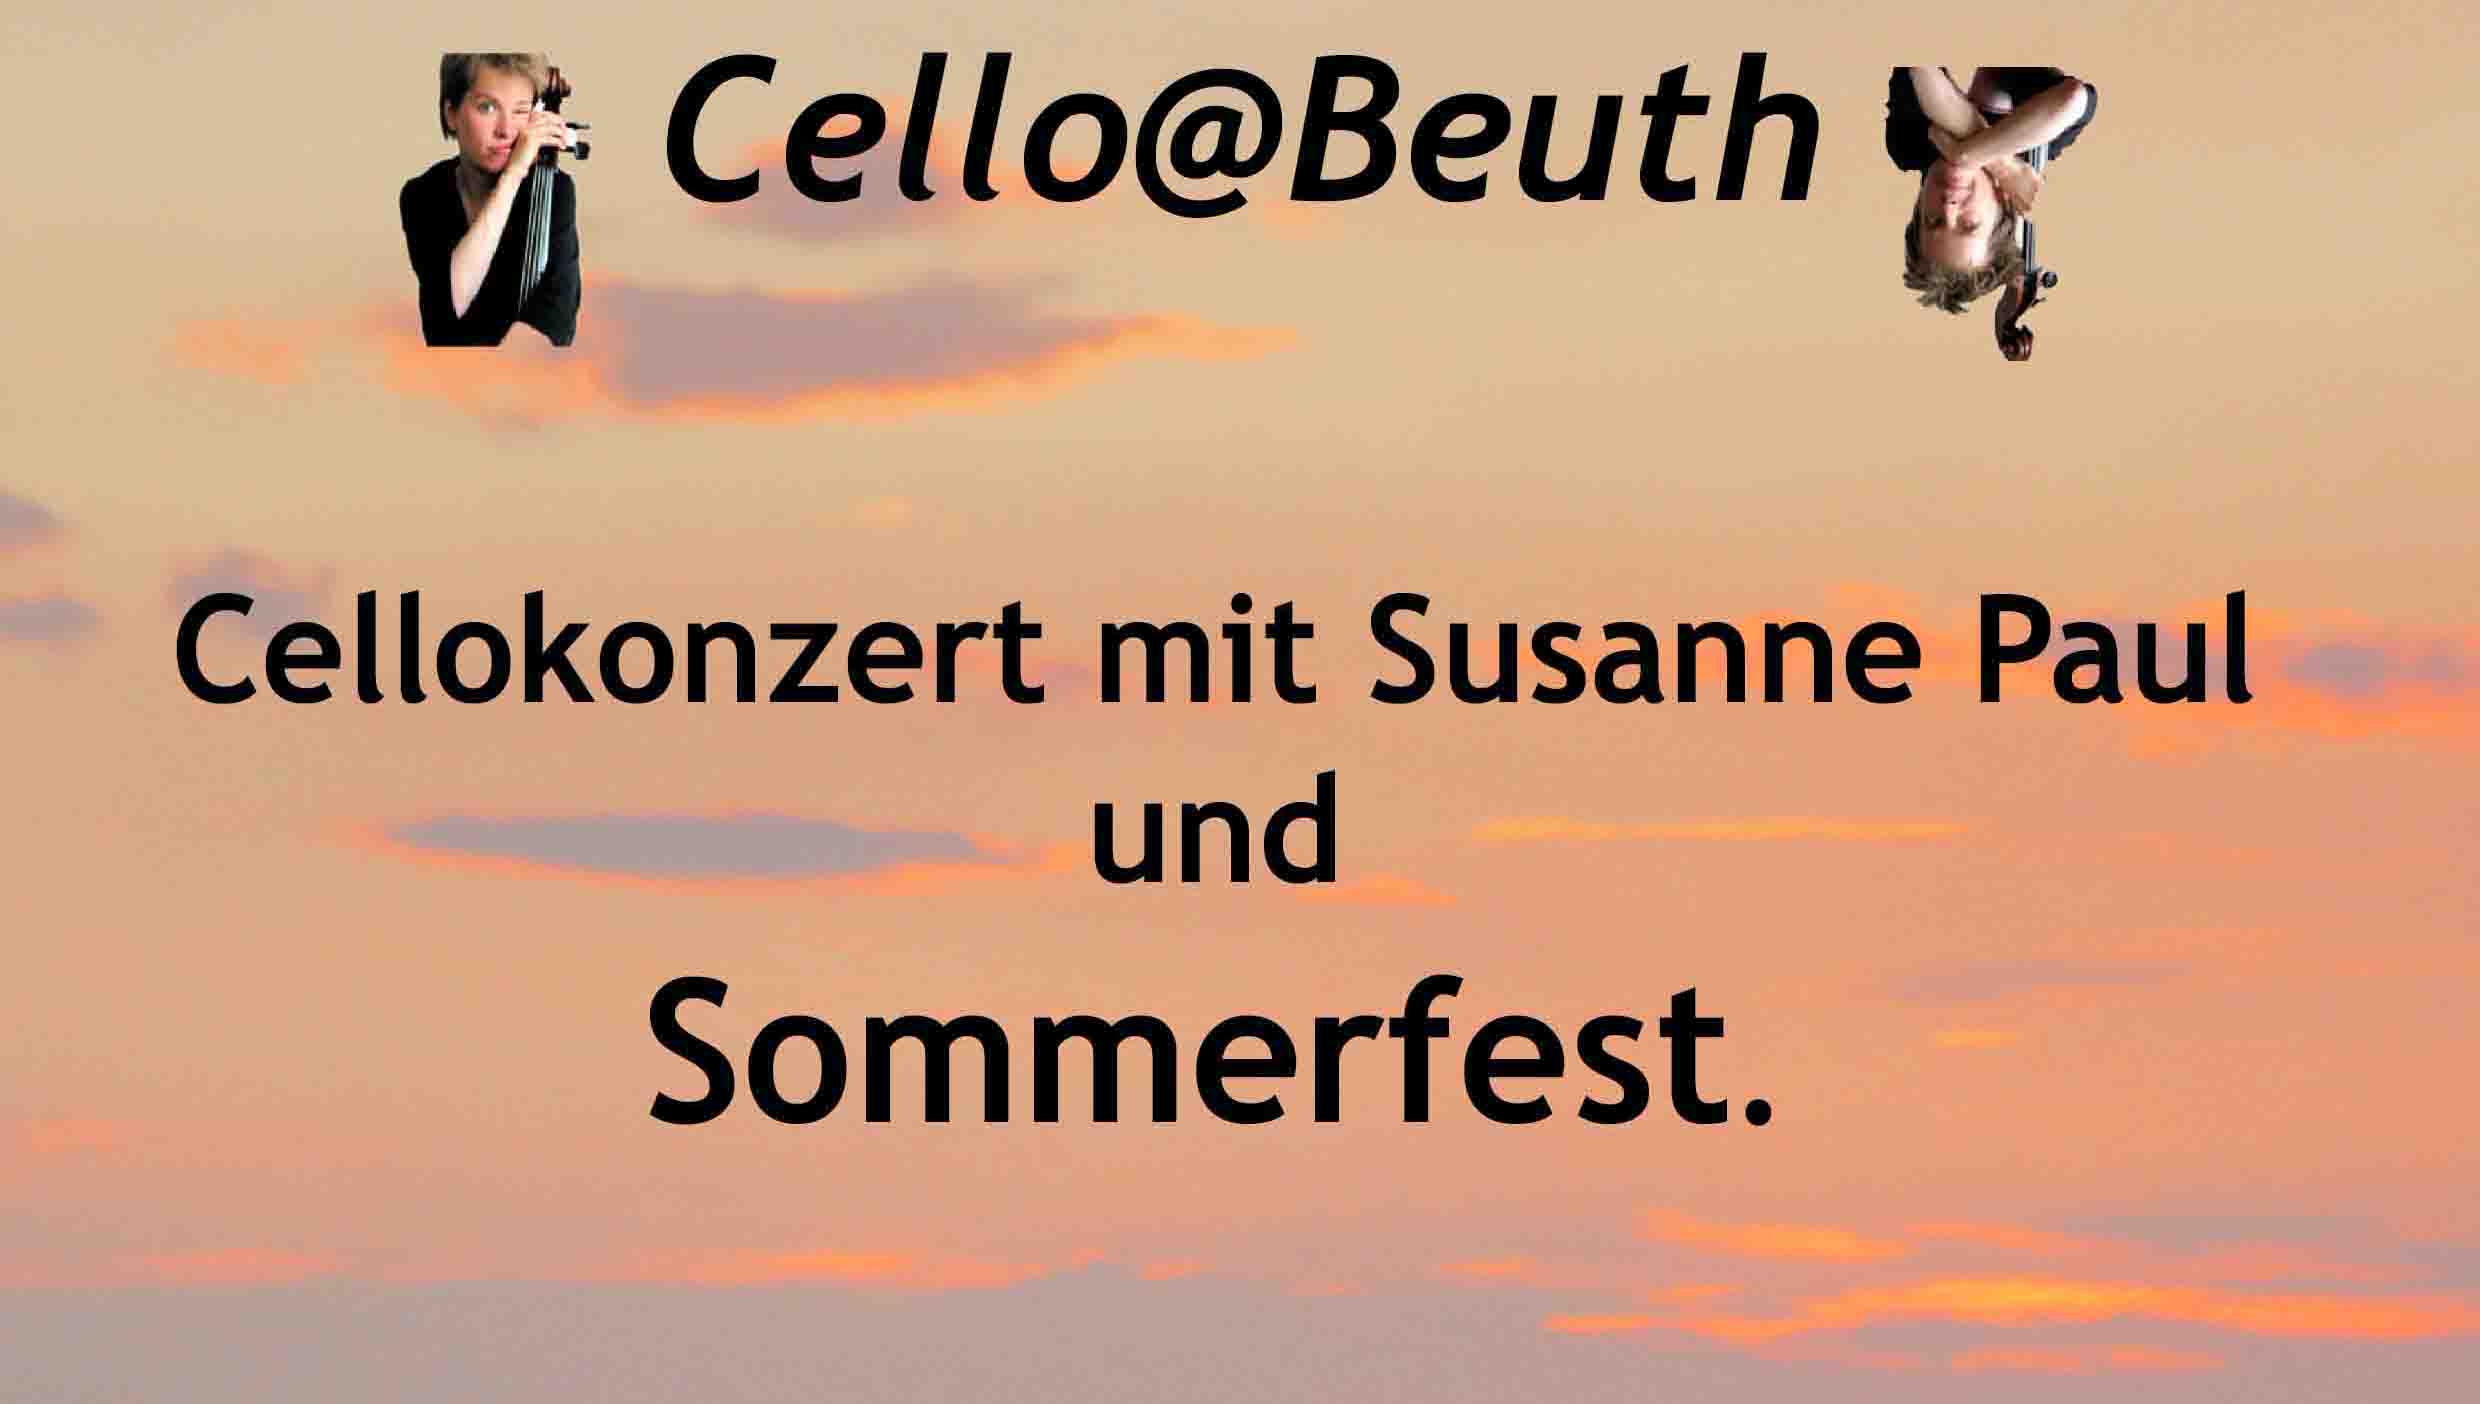 Cello@Beuth - Solokonzert der Künstlerin Susanne Paul.